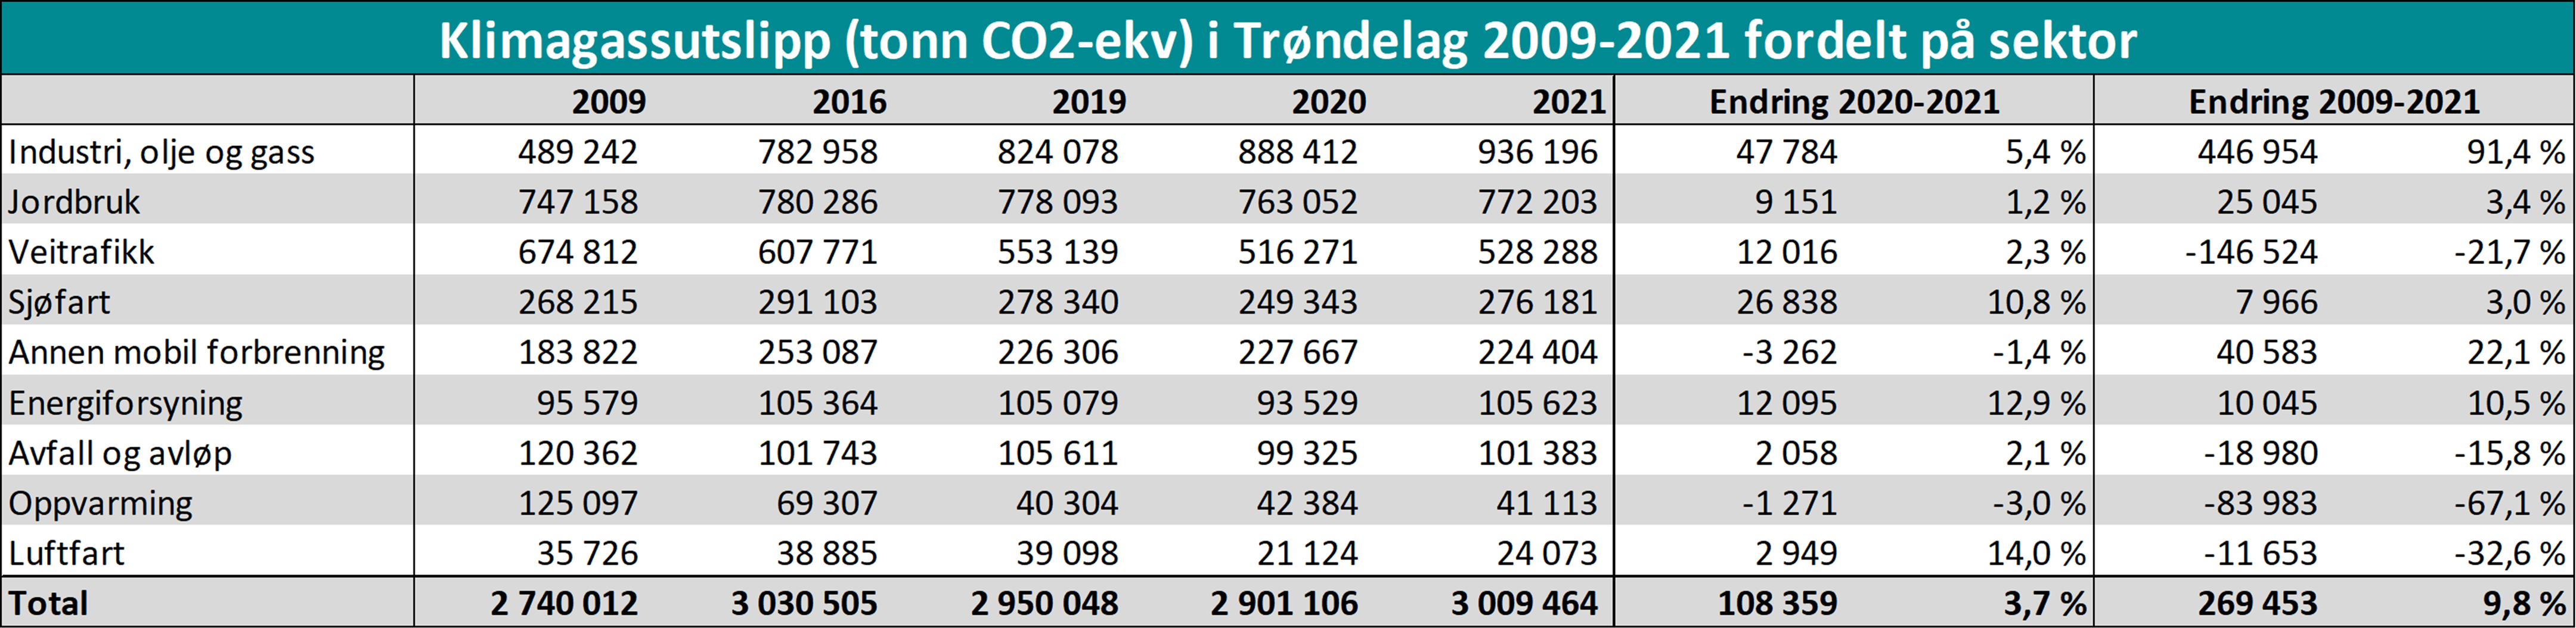 Klimagassutslipp (tonn CO2-ekv) i Trøndelag 2009-2021 fordelt på sektor